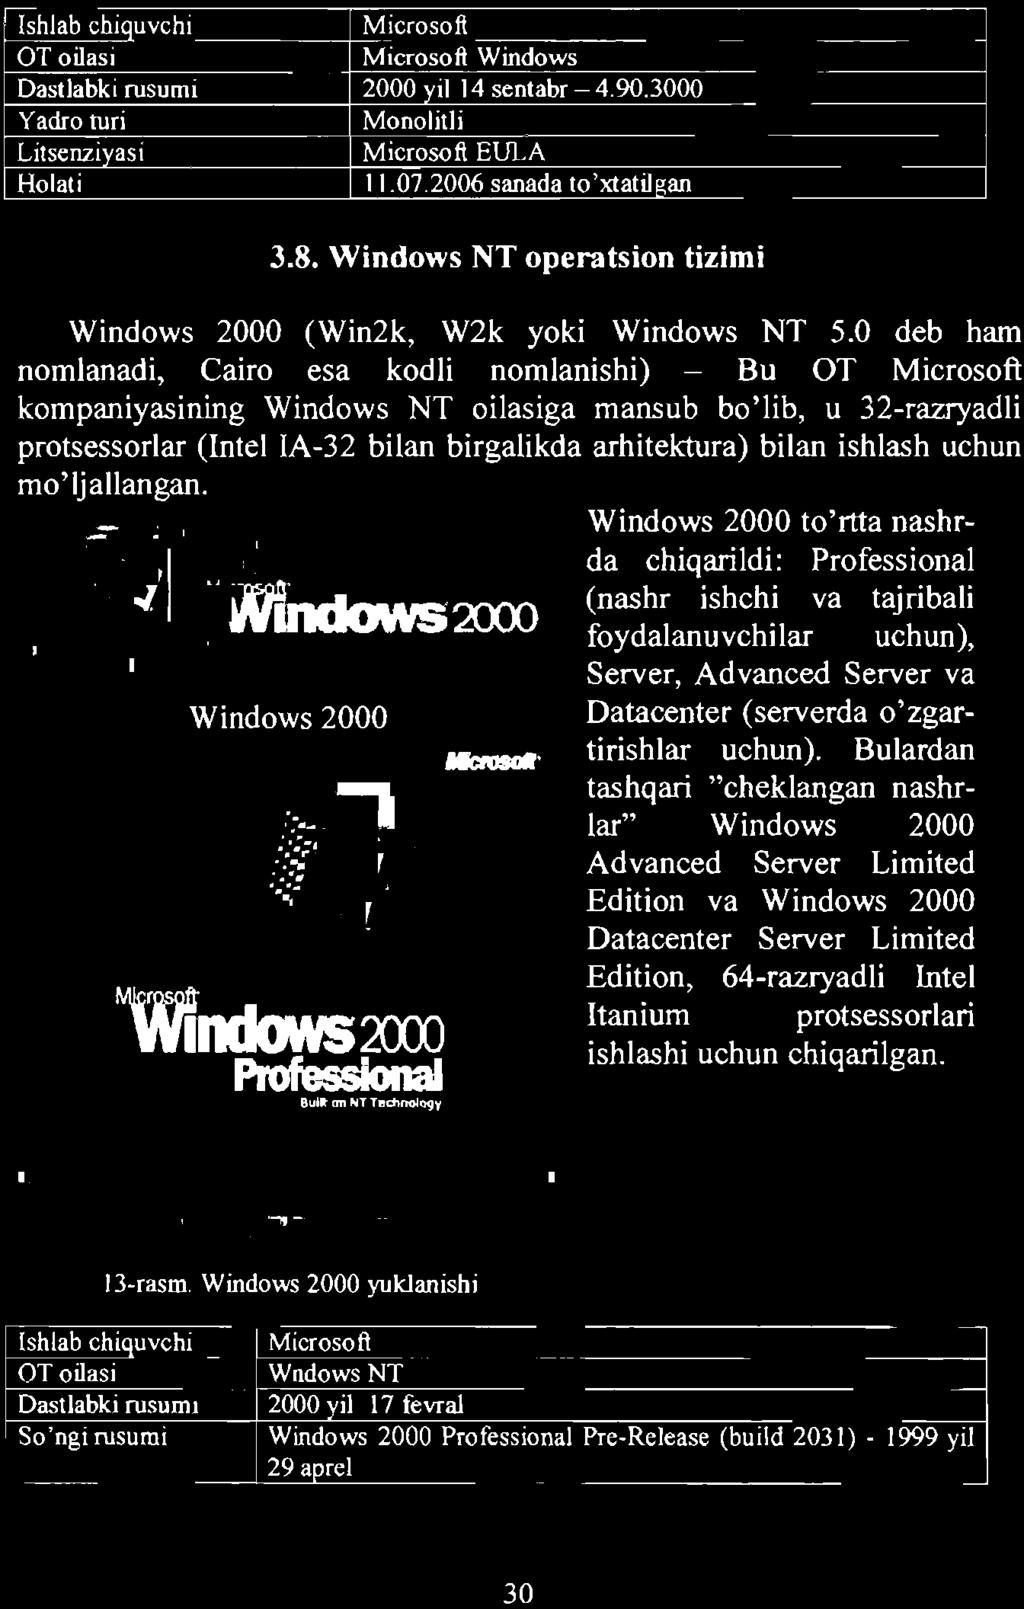 Windows 2000 to'rtta nashrda chiqarildi: Professional (nashr ishchi va tajribali WlhdIMS2XX) foydalanuvchilar uchun), Server, Advanced Server va Windows 2000 Datacenter (serverda